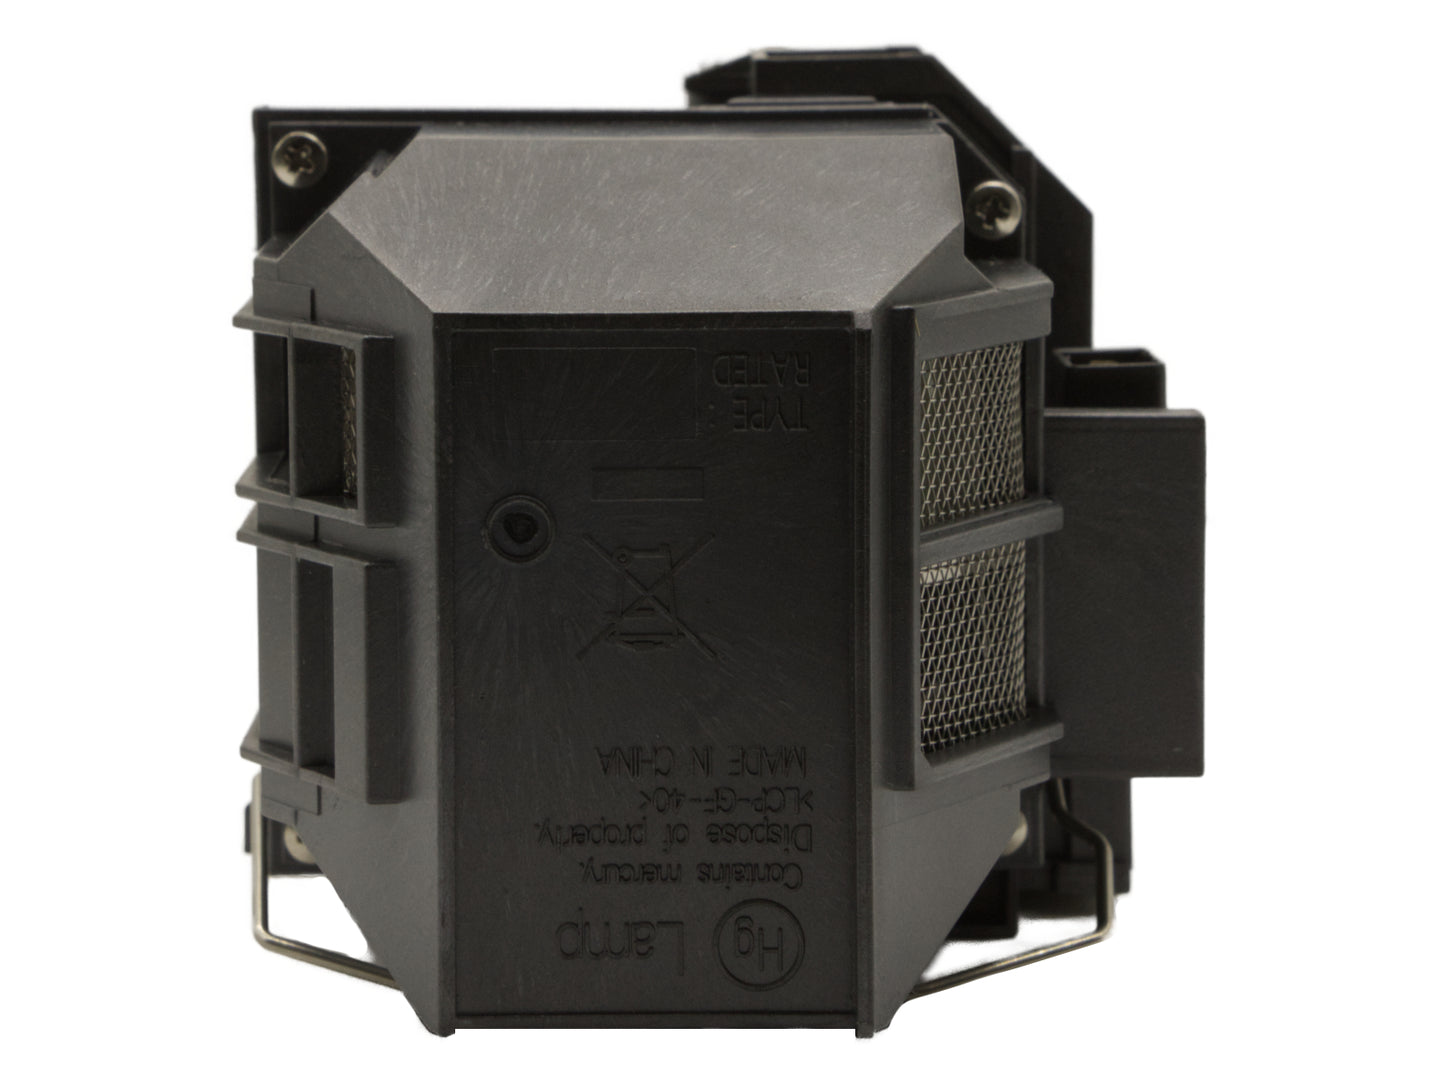 azurano Beamerlampe kompatibel mit EPSON ELPLP71, V13H010L71 für diverse Epson Projektoren der EB-Serie, BrightLink-Serie, PowerLite-Serie, Ersatzlampe mit Gehäuse, 245W - Bild 4